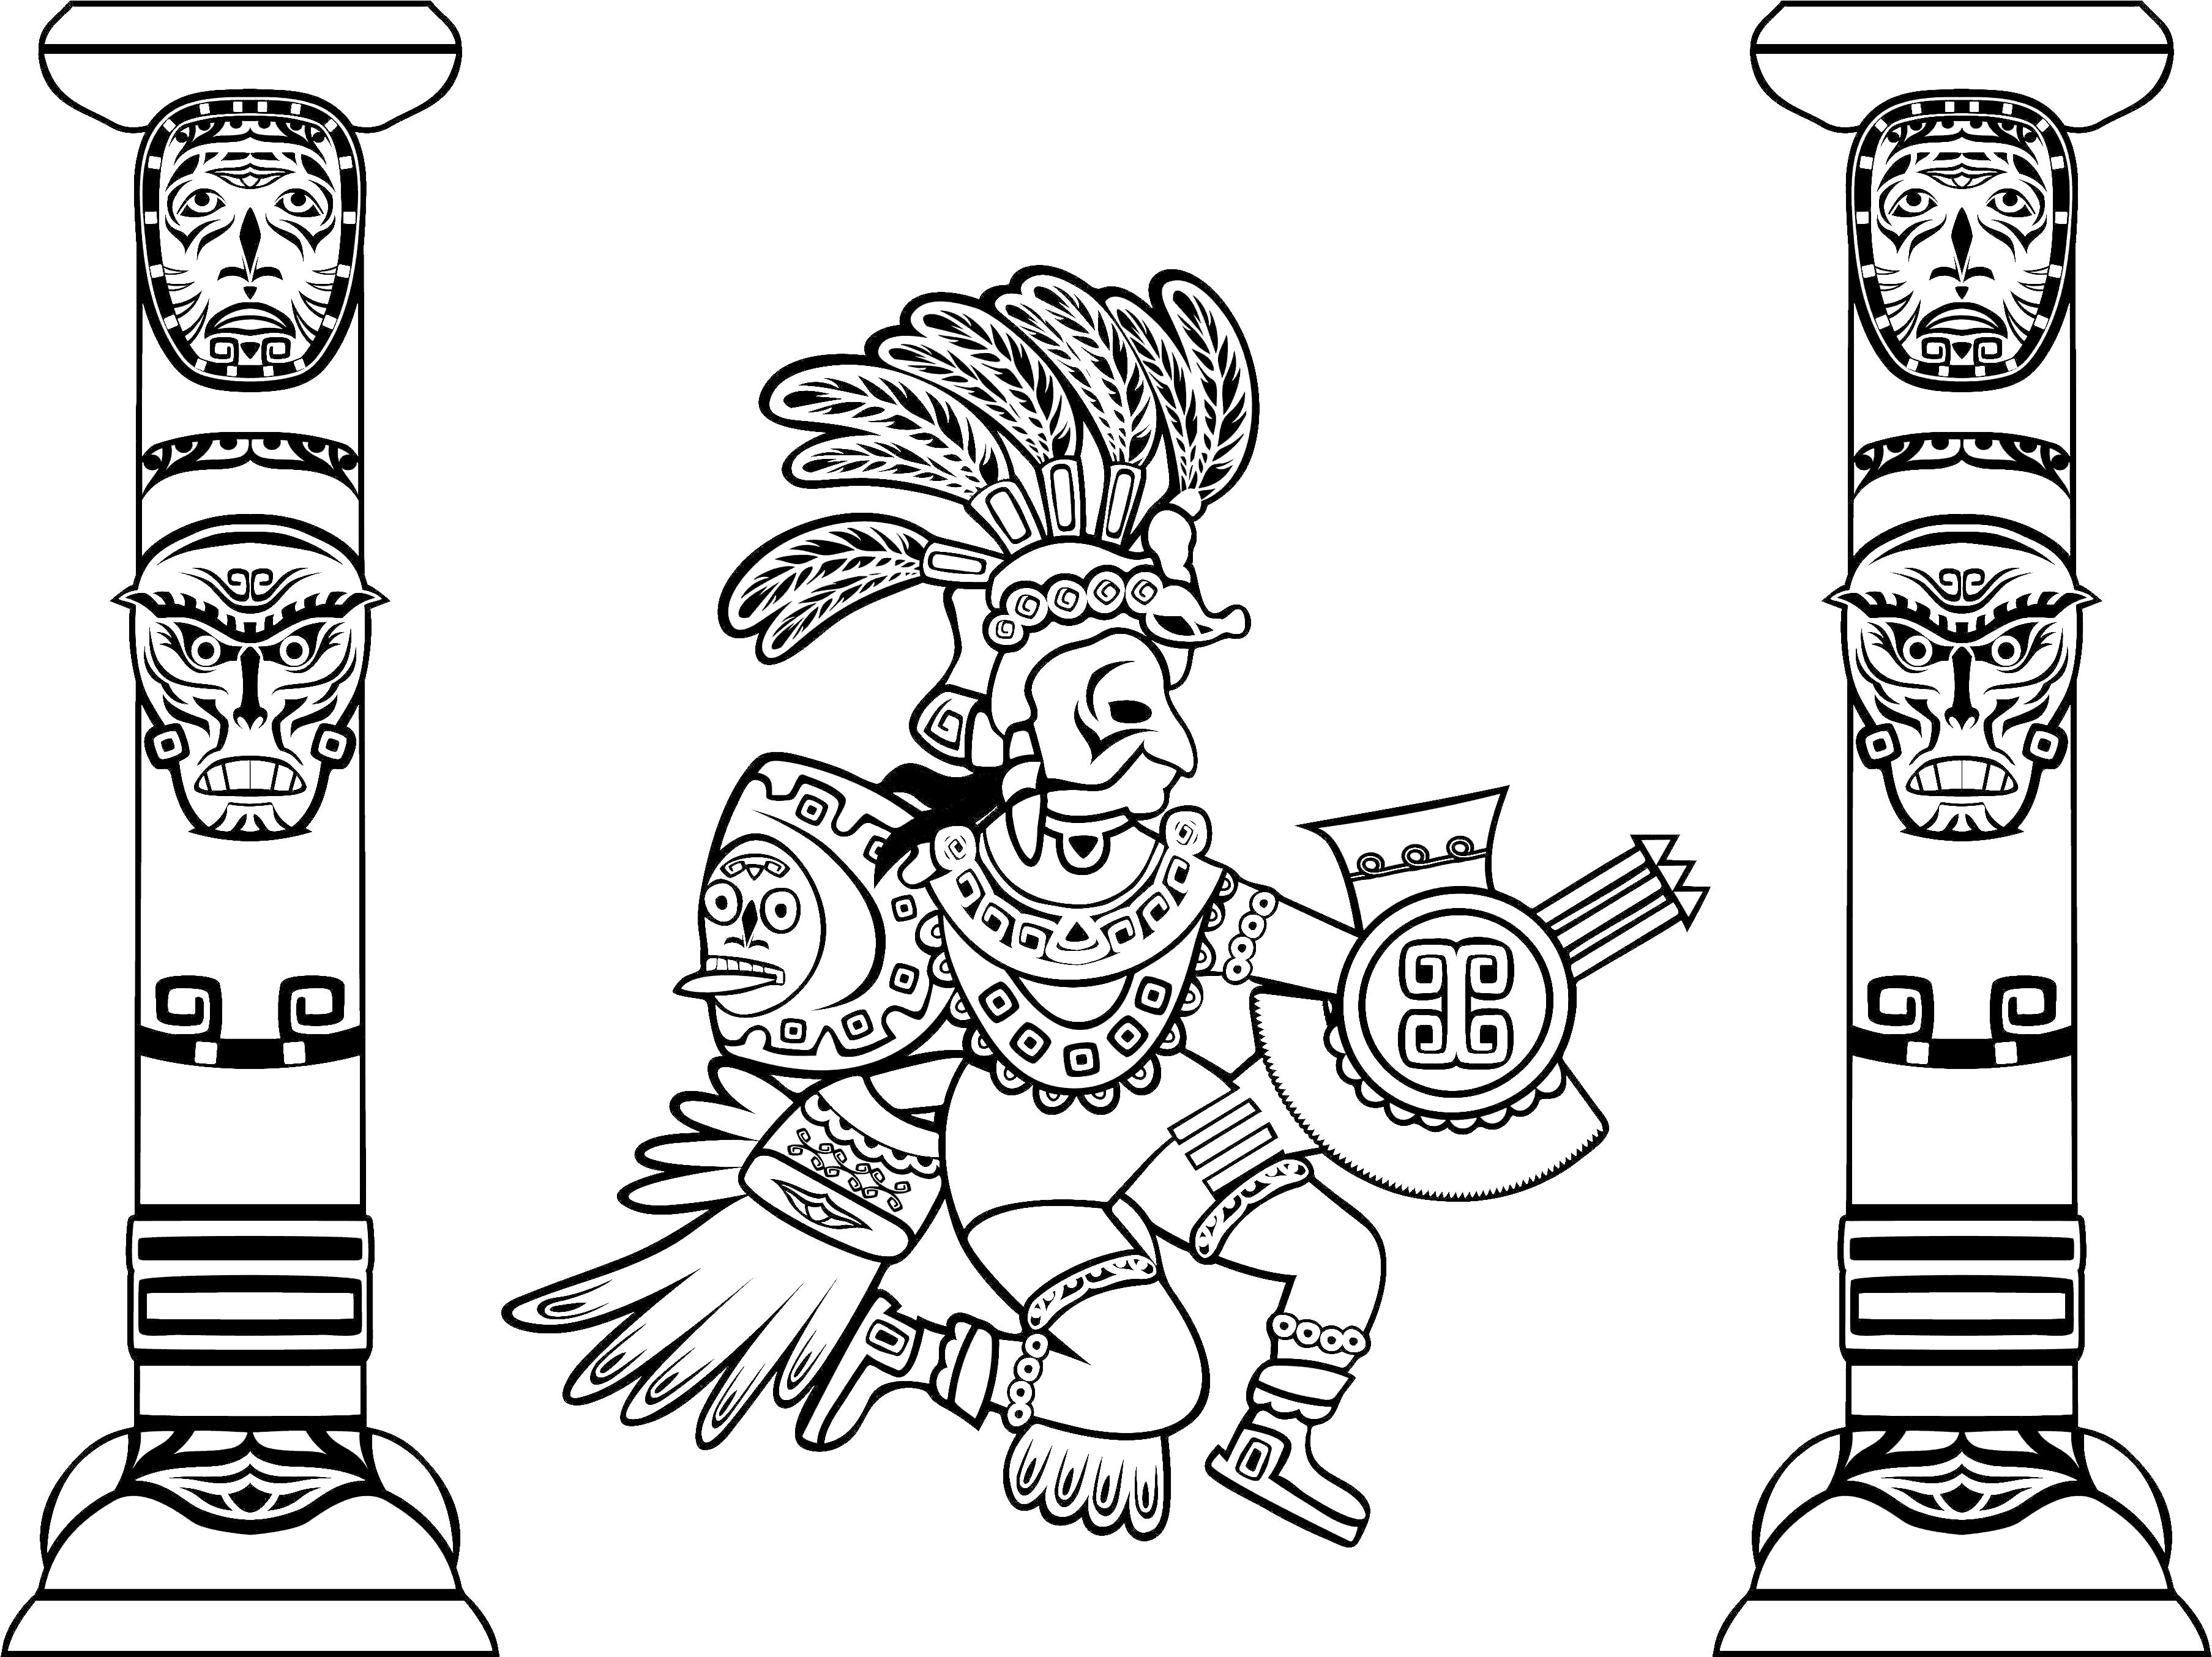 Soberba coloração de Quetzalcoatl (deus serpente emplumado e totens)